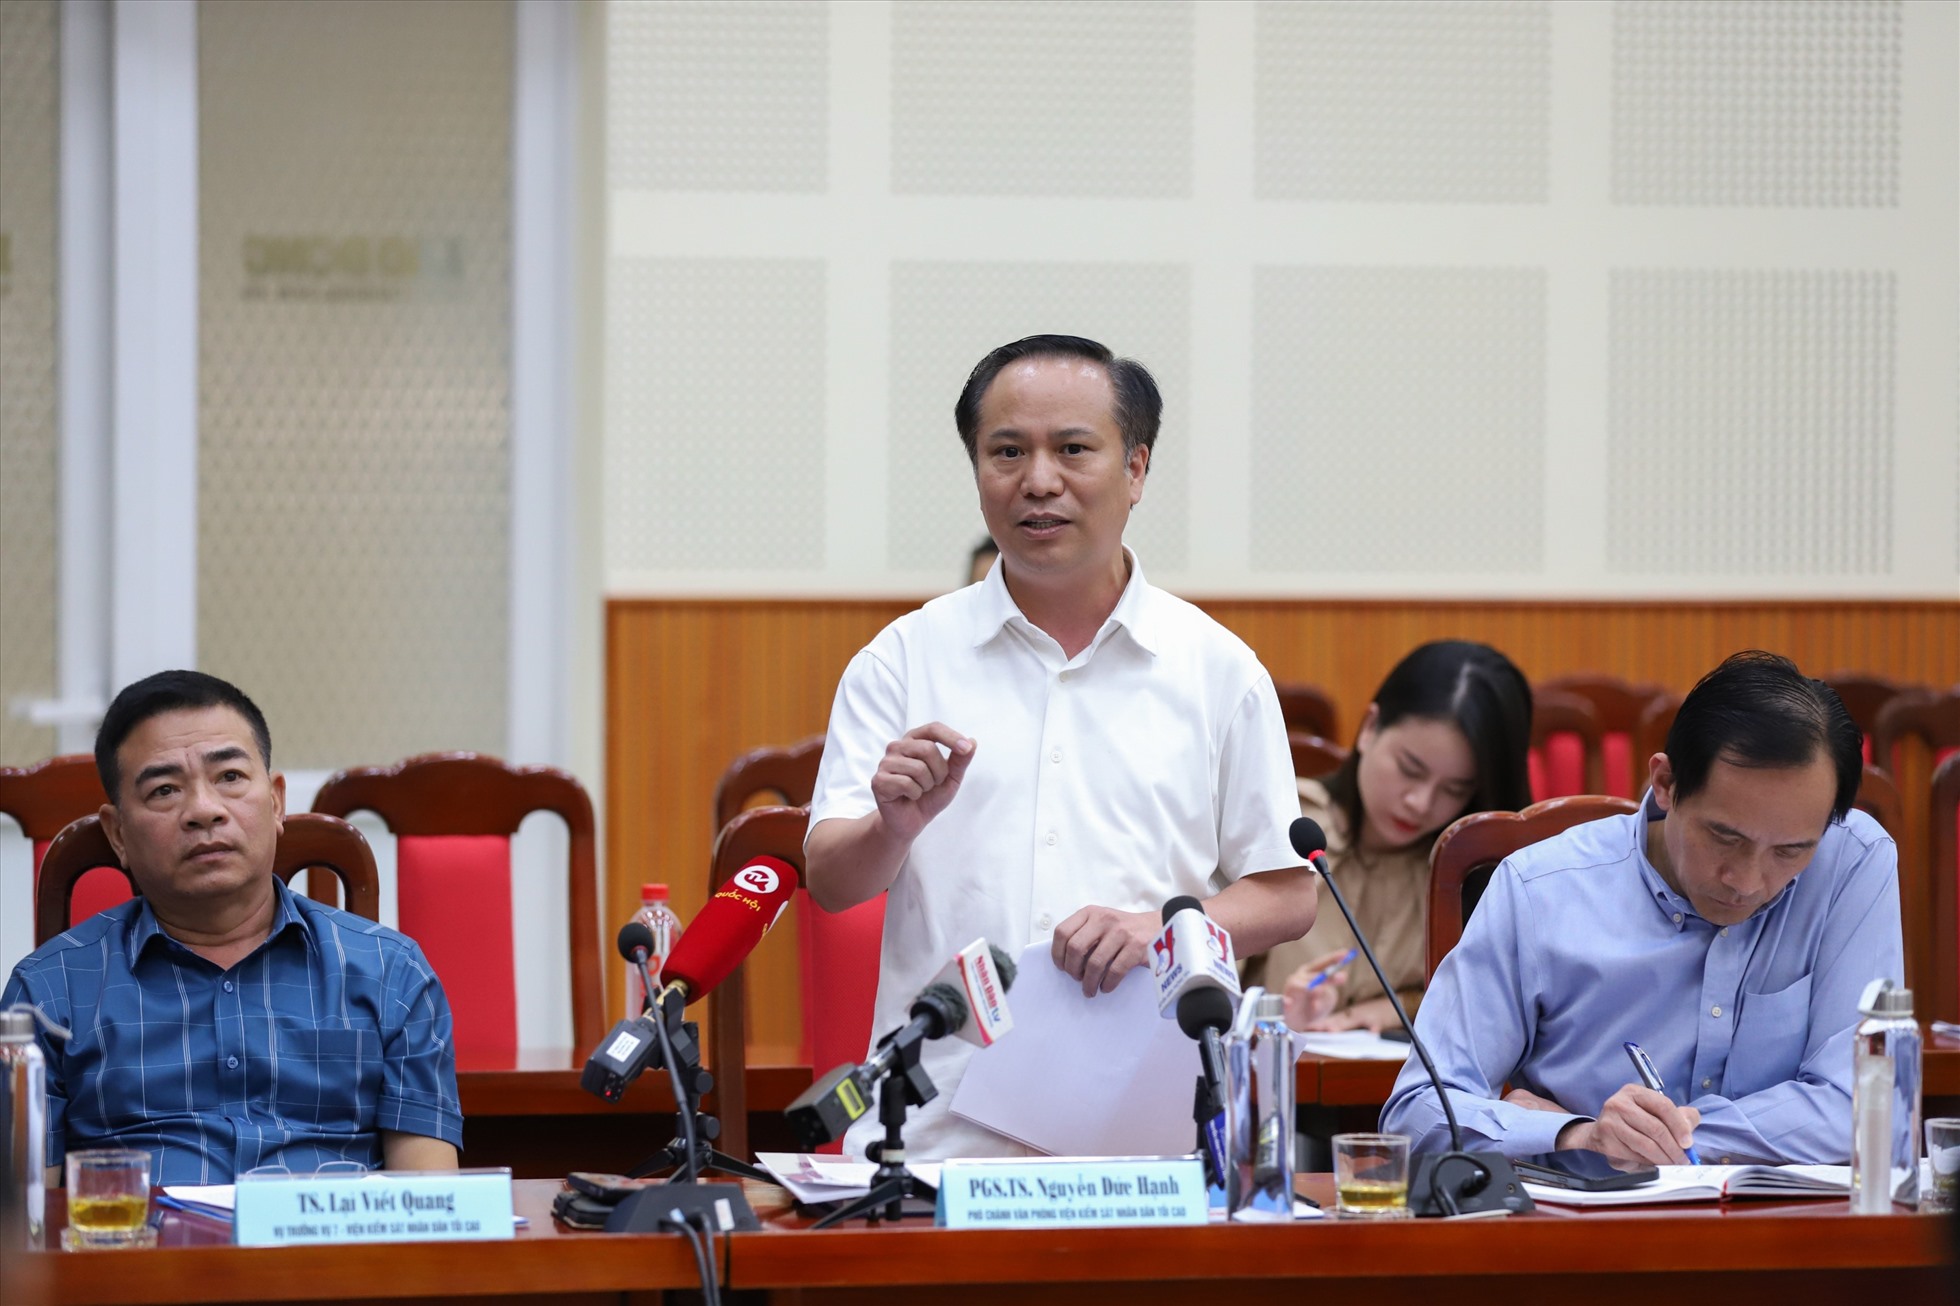 Ông Nguyễn Đức Hạnh, Phó Chánh Văn phòng Viện Kiểm sát nhân dân tối cao trình bày tham luận về một số thủ đoạn vi phạm pháp luật trong việc trốn đóng BHXH bắt buộc, việc truy cứu trách nhiệm và kiến nghị, đề xuất.